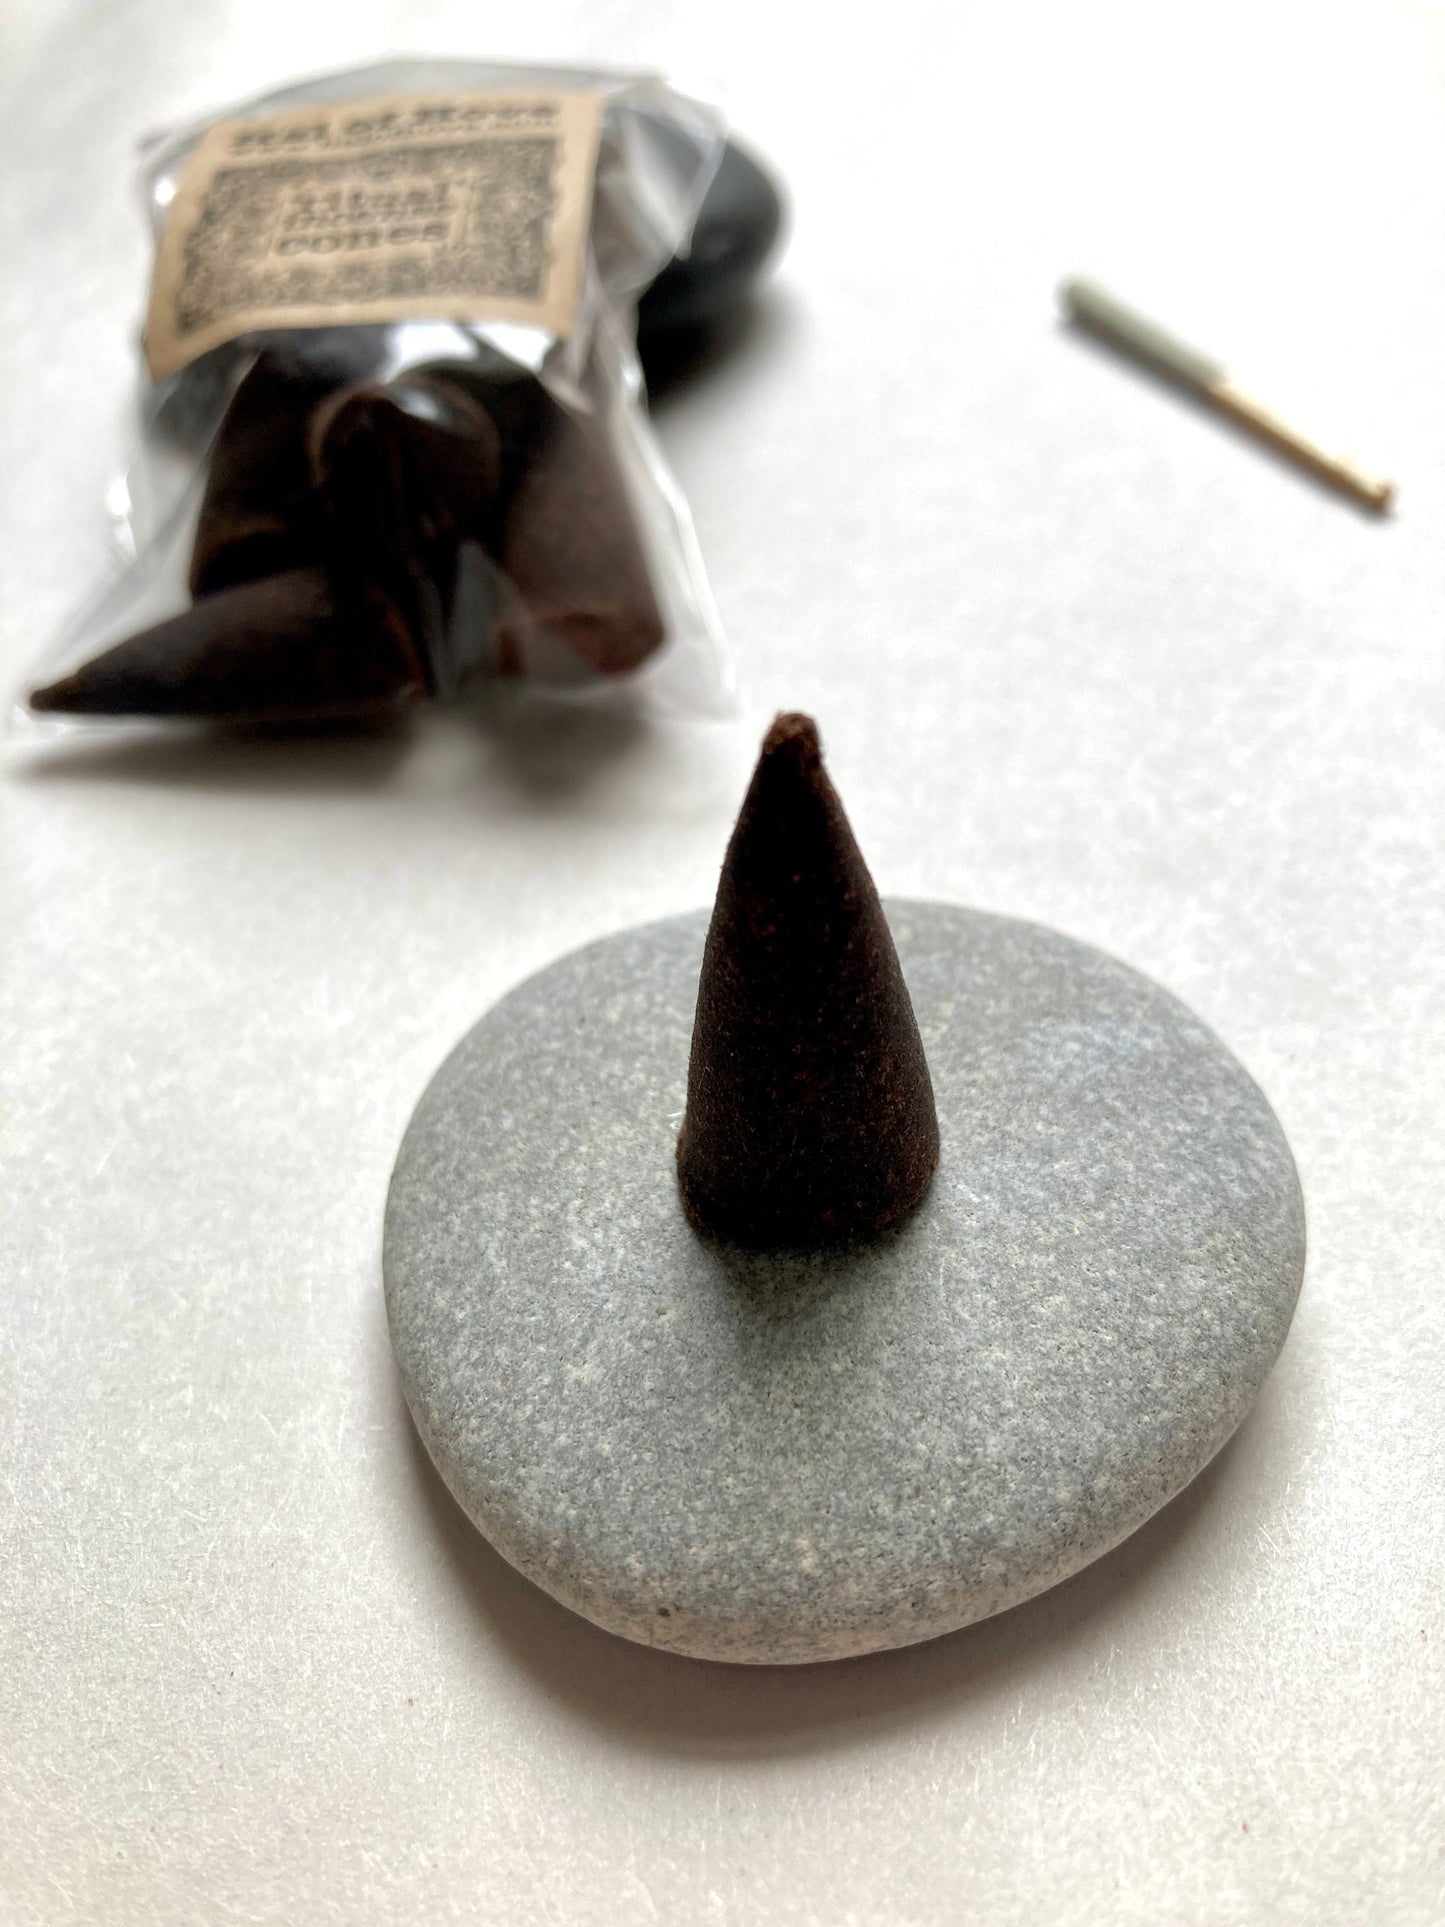 Incense cones (‘Altar’)